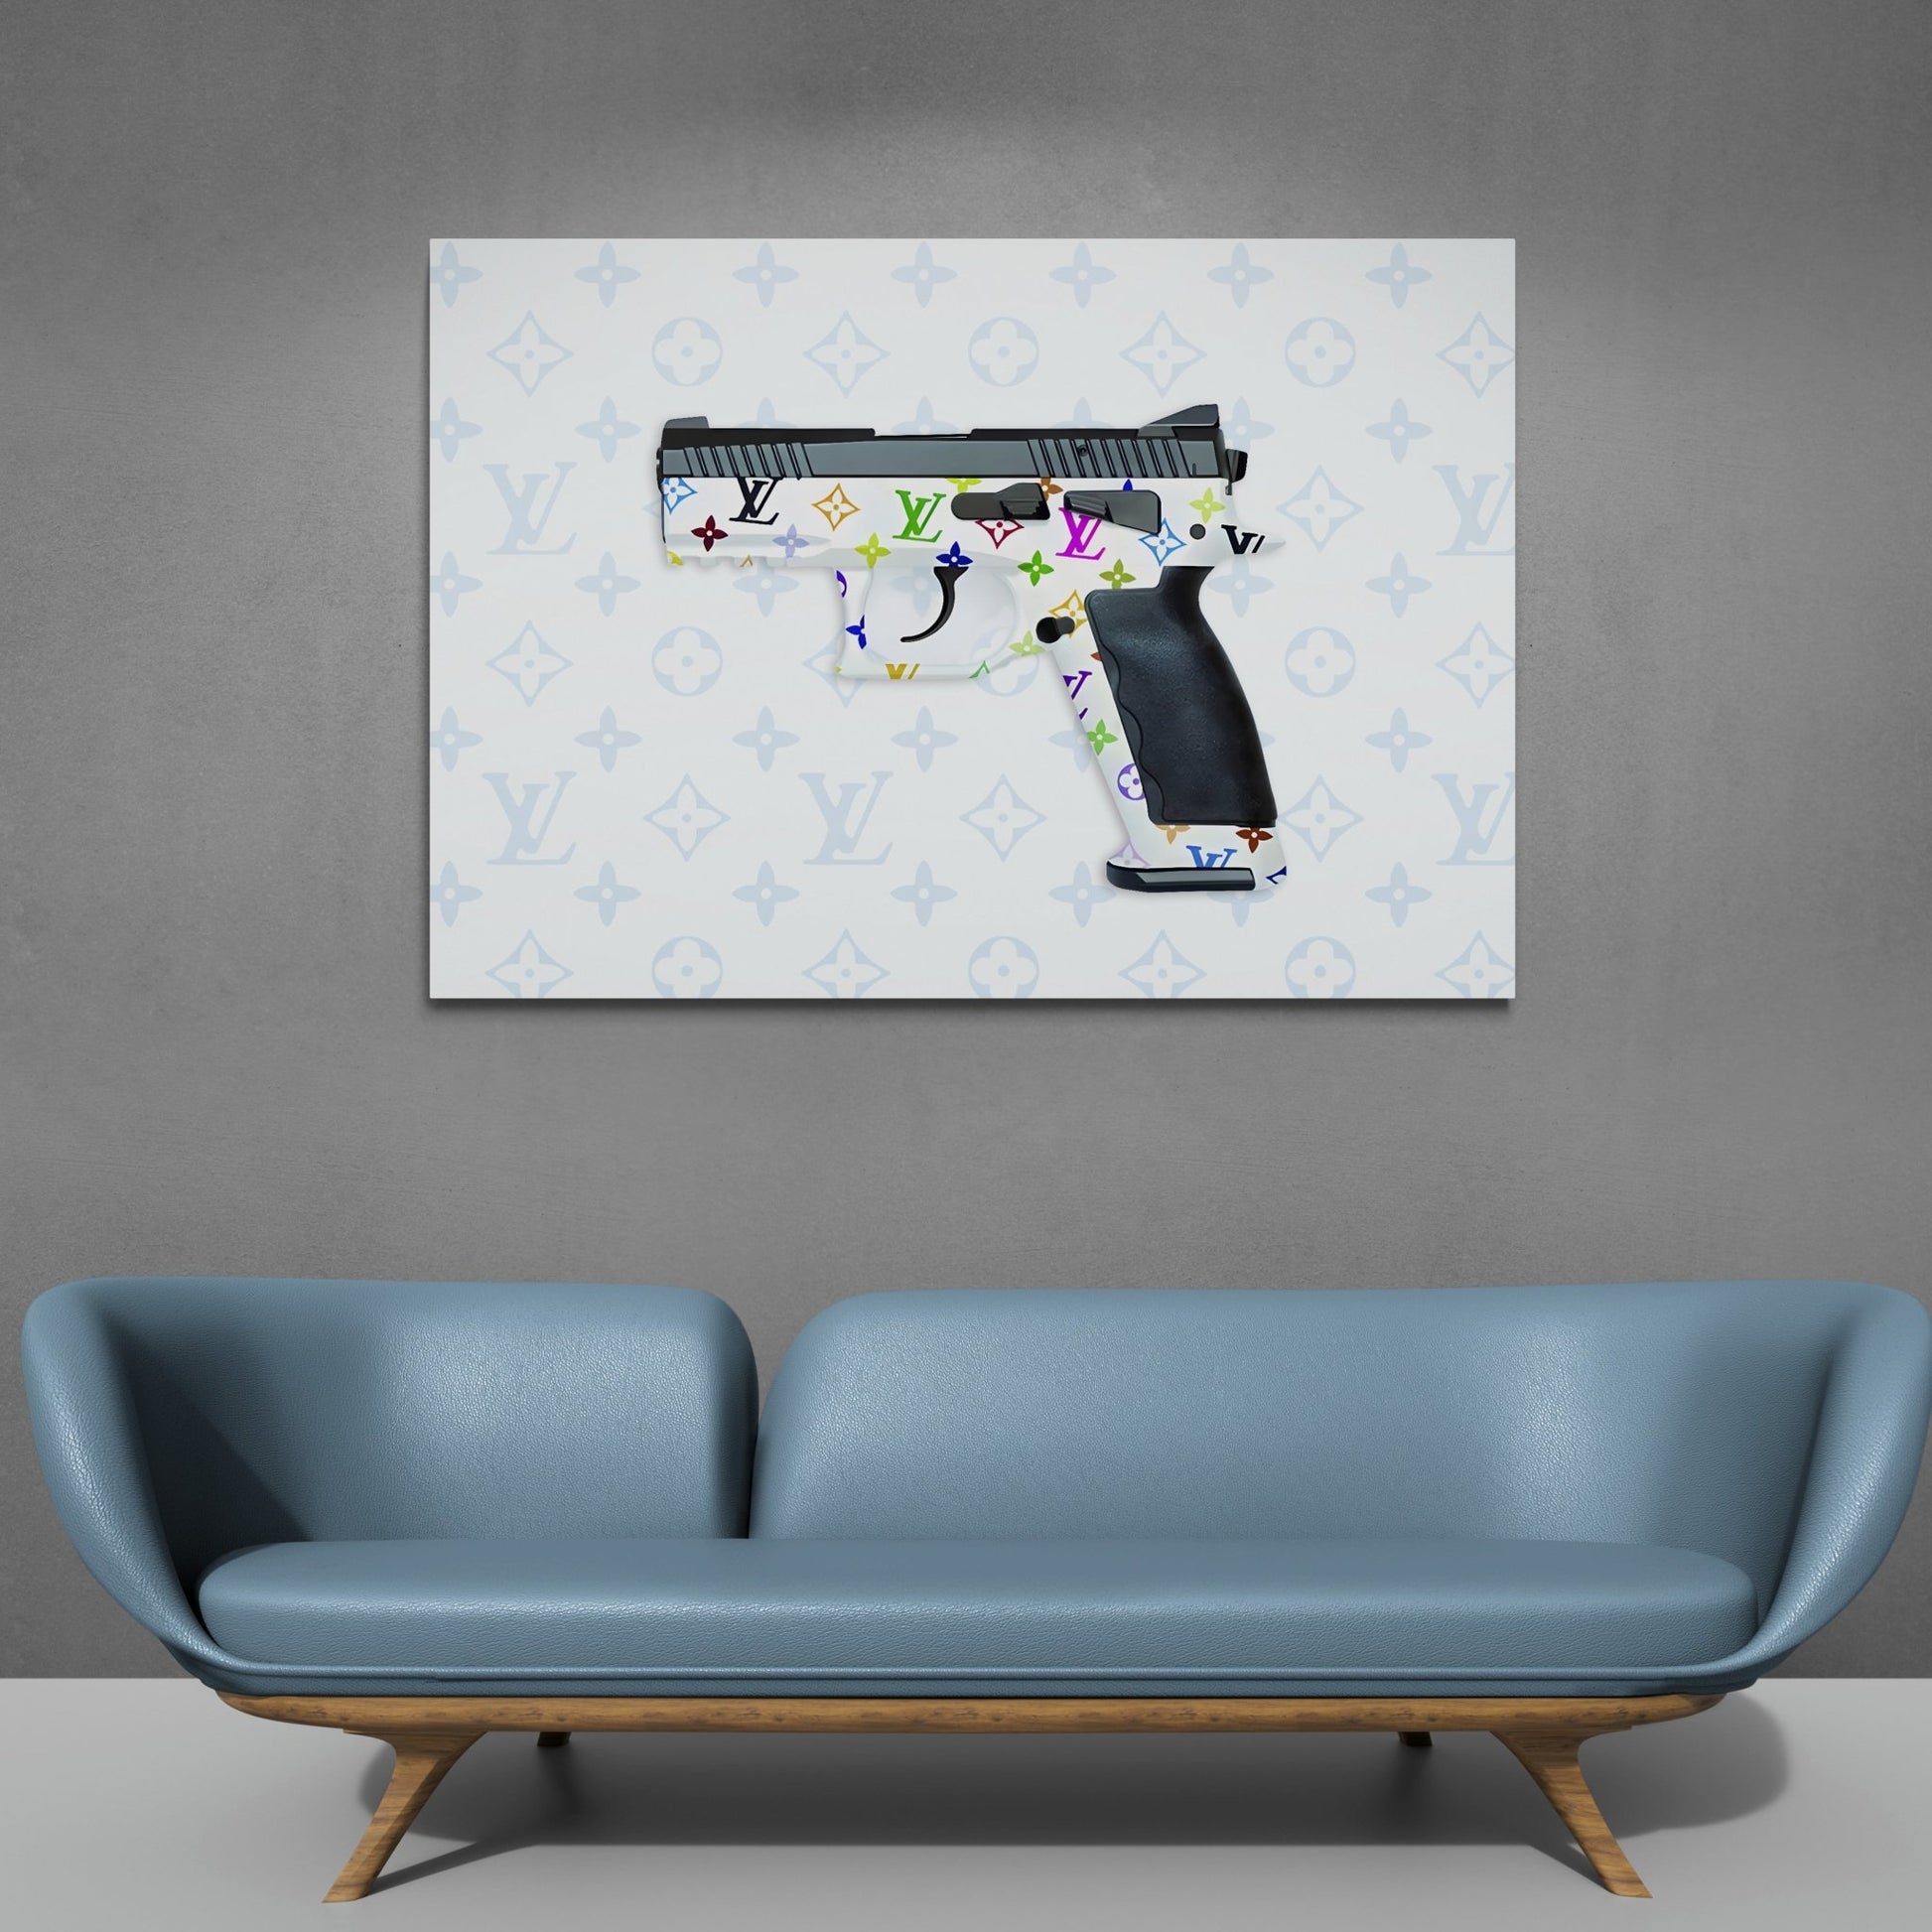 Louis Vuitton Gun Framed Print by Street Art - Fine Art America